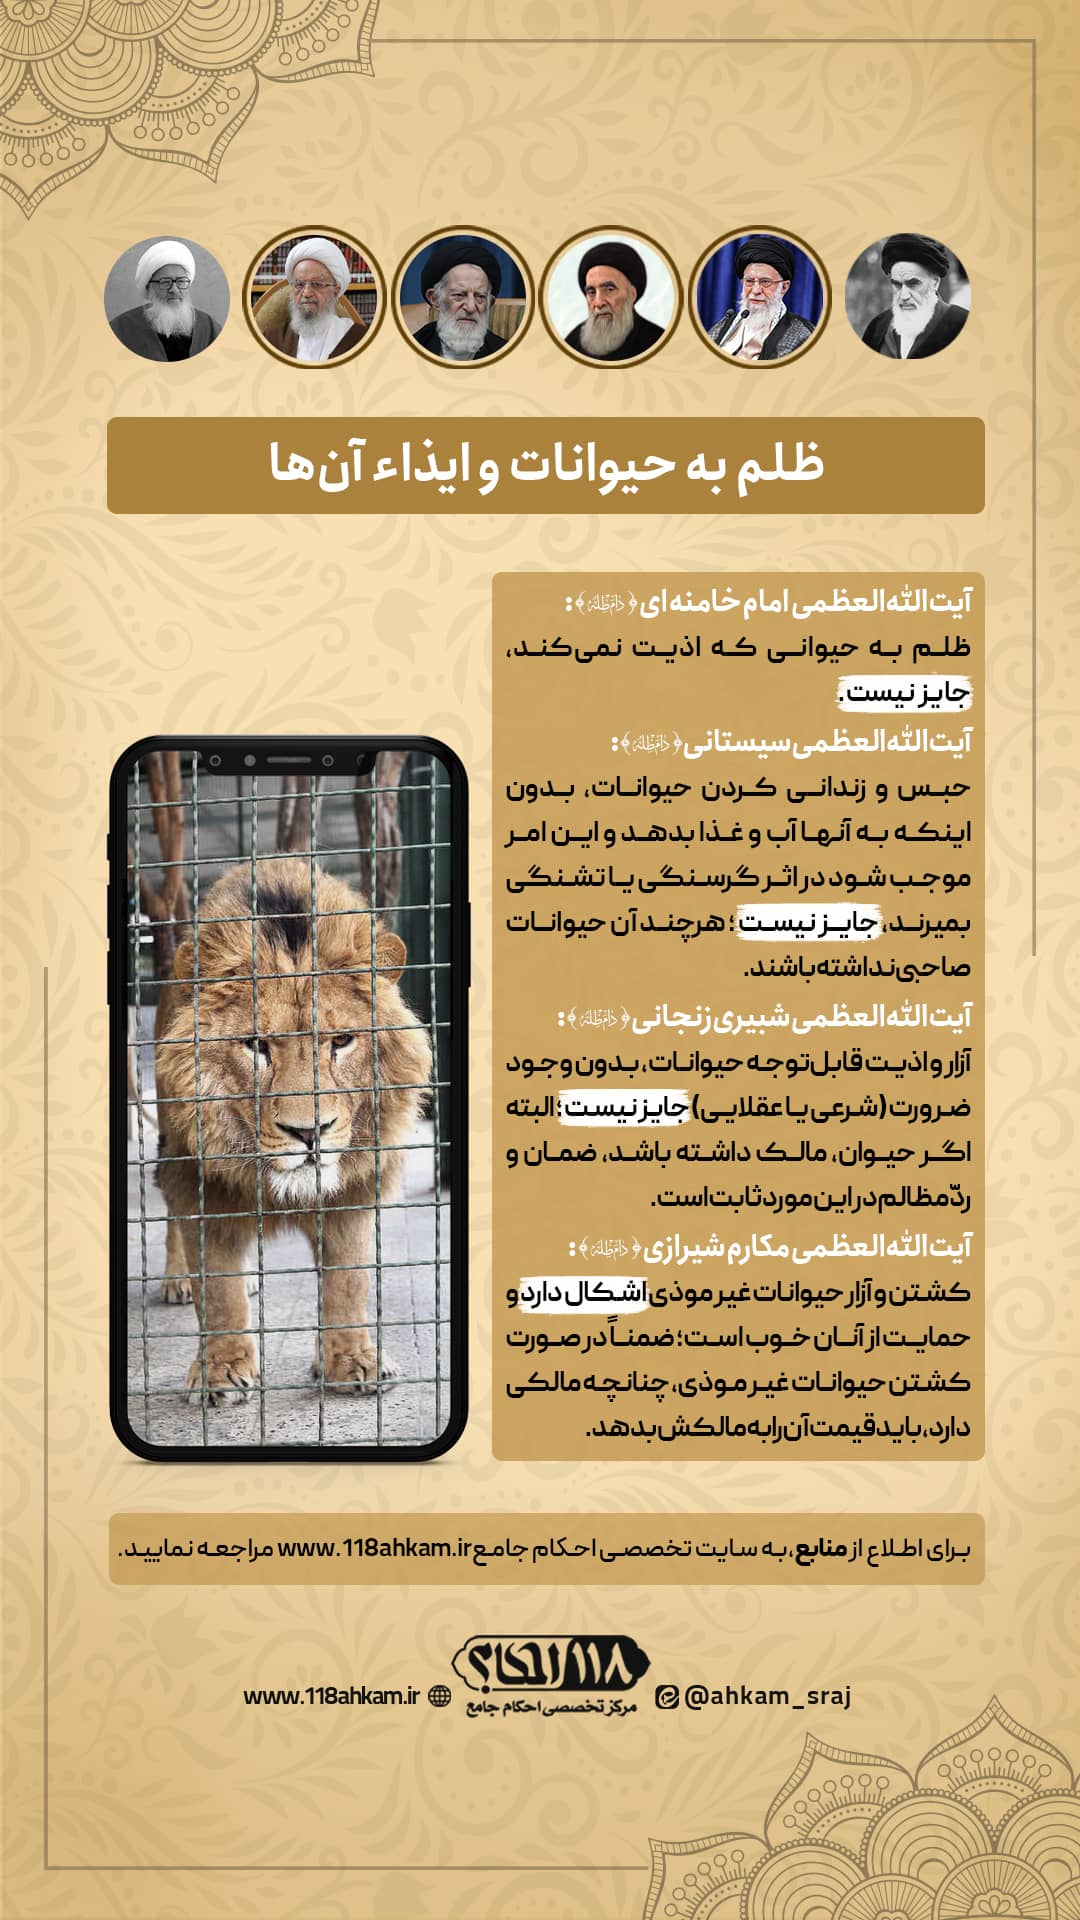 حکم شرعی ظلم و ایذاء حیوانات " به مناسبت ۸ آوریل، روز جهانی عاشقان باغ وحش "